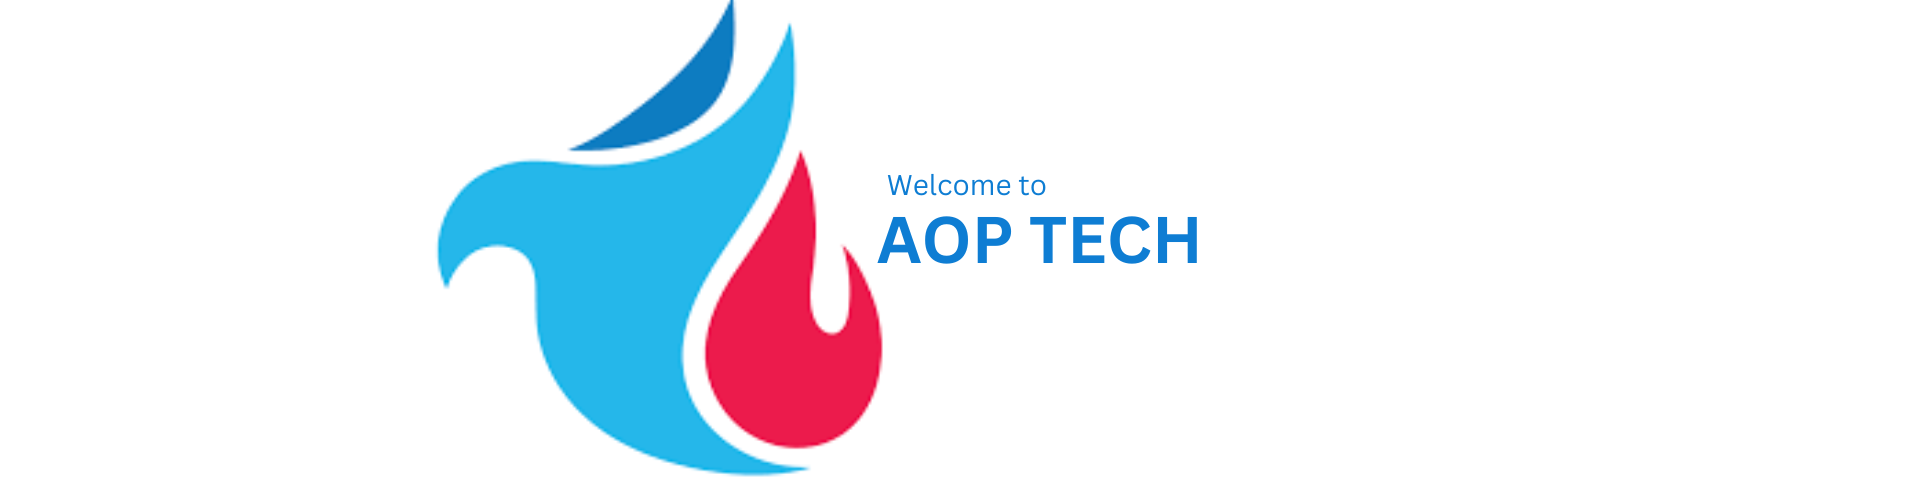 AoP Tech Logo Picture